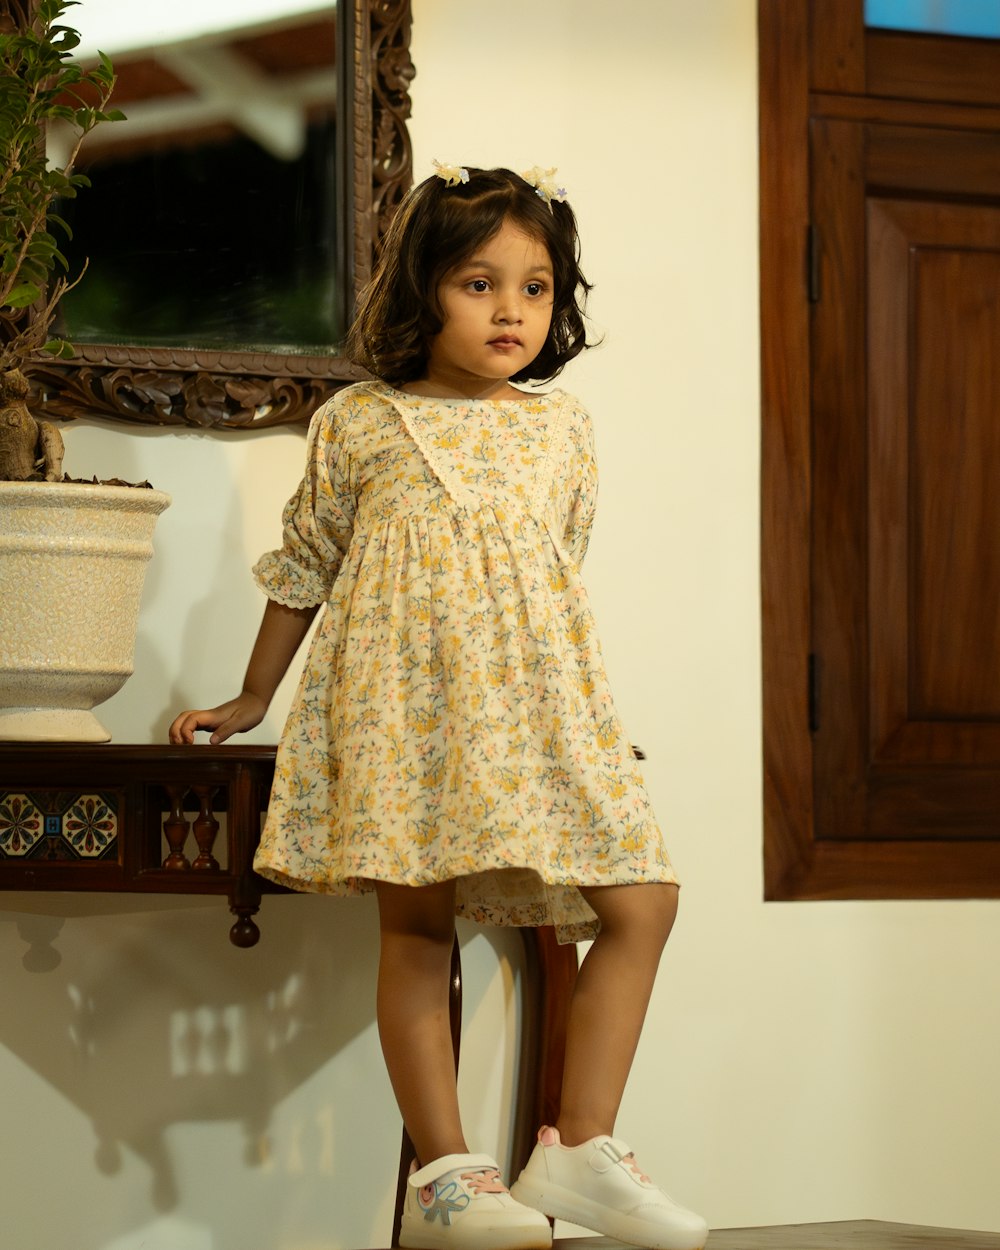 una niña pequeña parada en una silla frente a un espejo